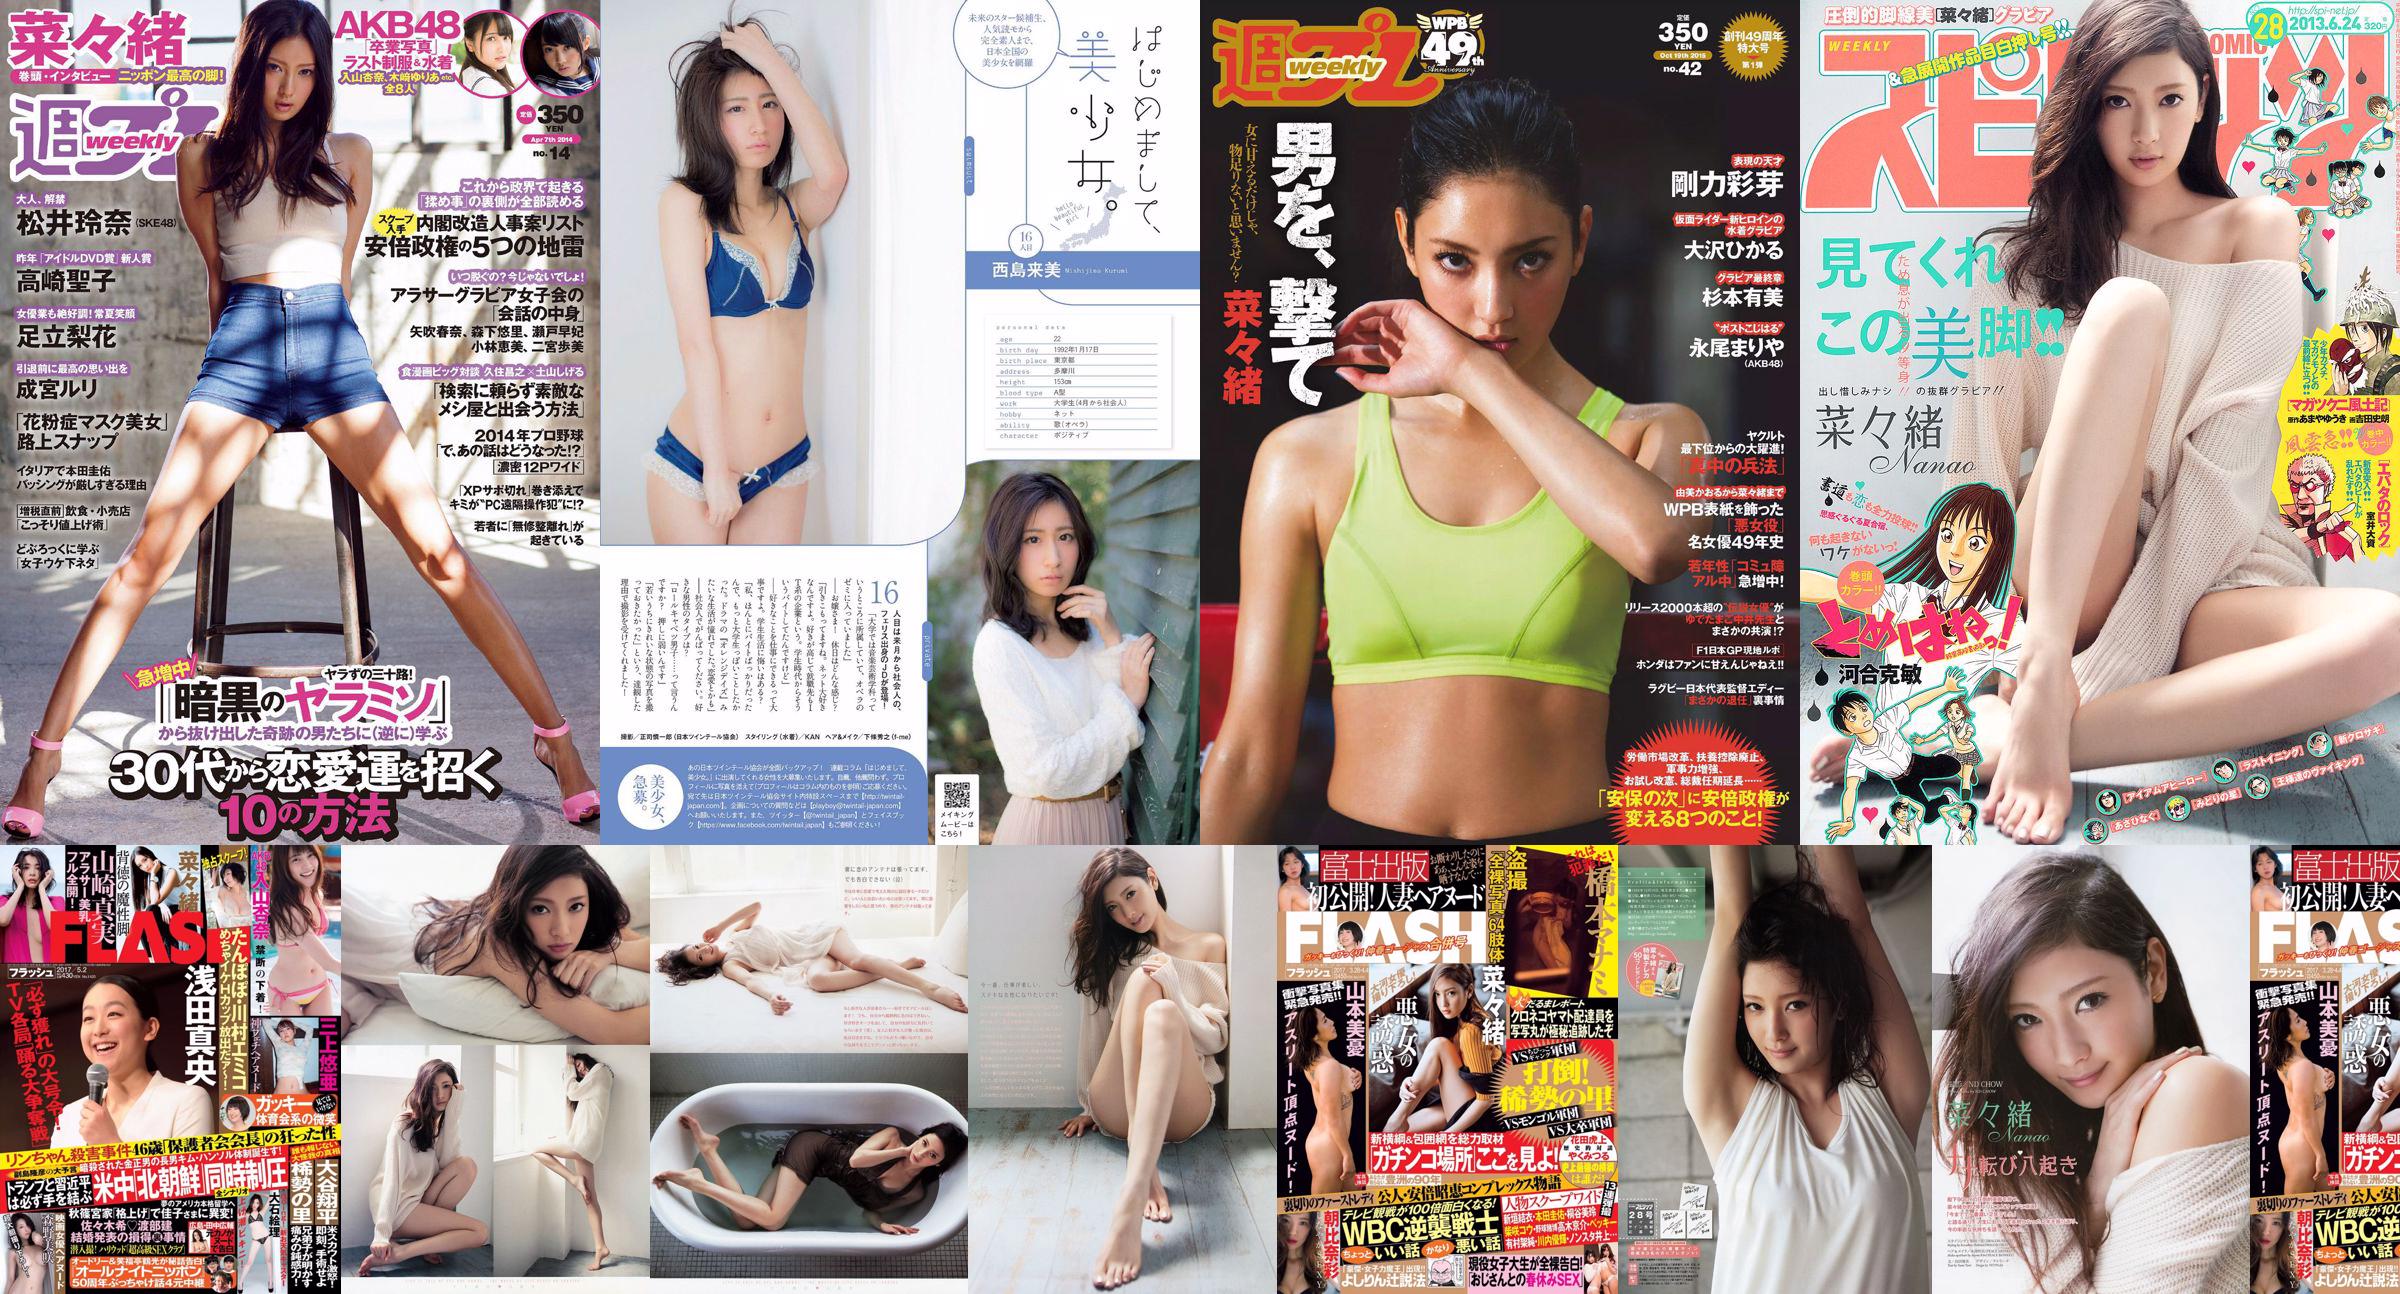 Nanao Yumi Sugimoto Hikaru Ohsawa Ayame Goriki Riona Nagao Mariya Nagao [Weekly Playboy] 2015 No.42 Photograph No.80b42e หน้า 2